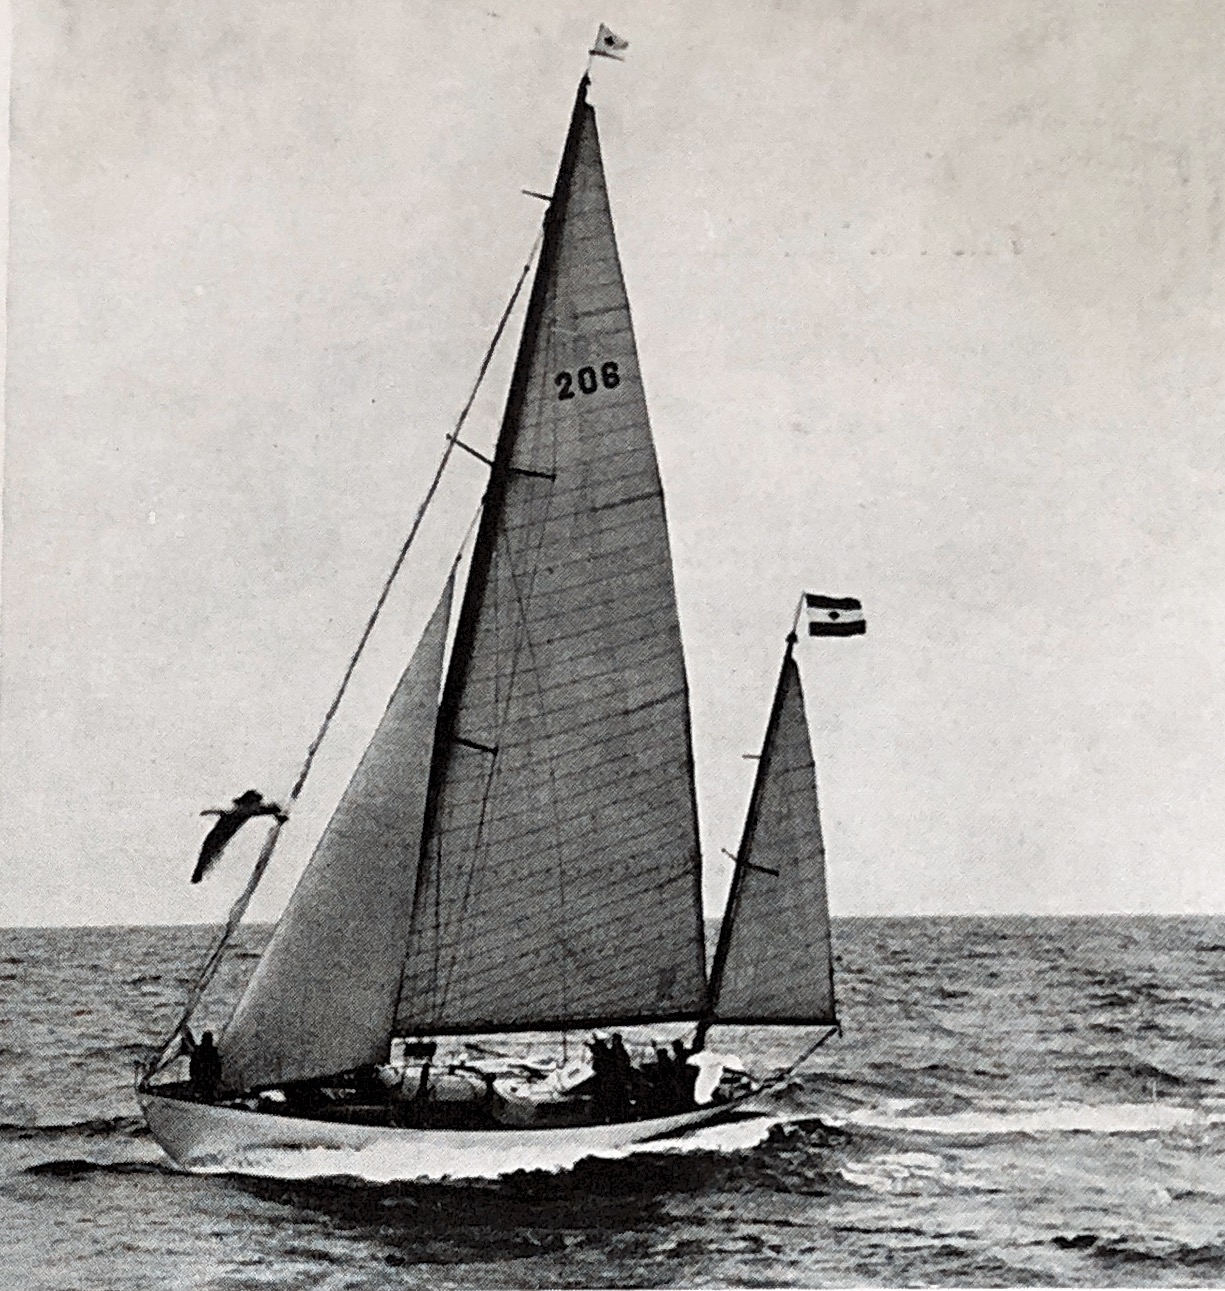 175 Zeearend IJmuiden Solent race